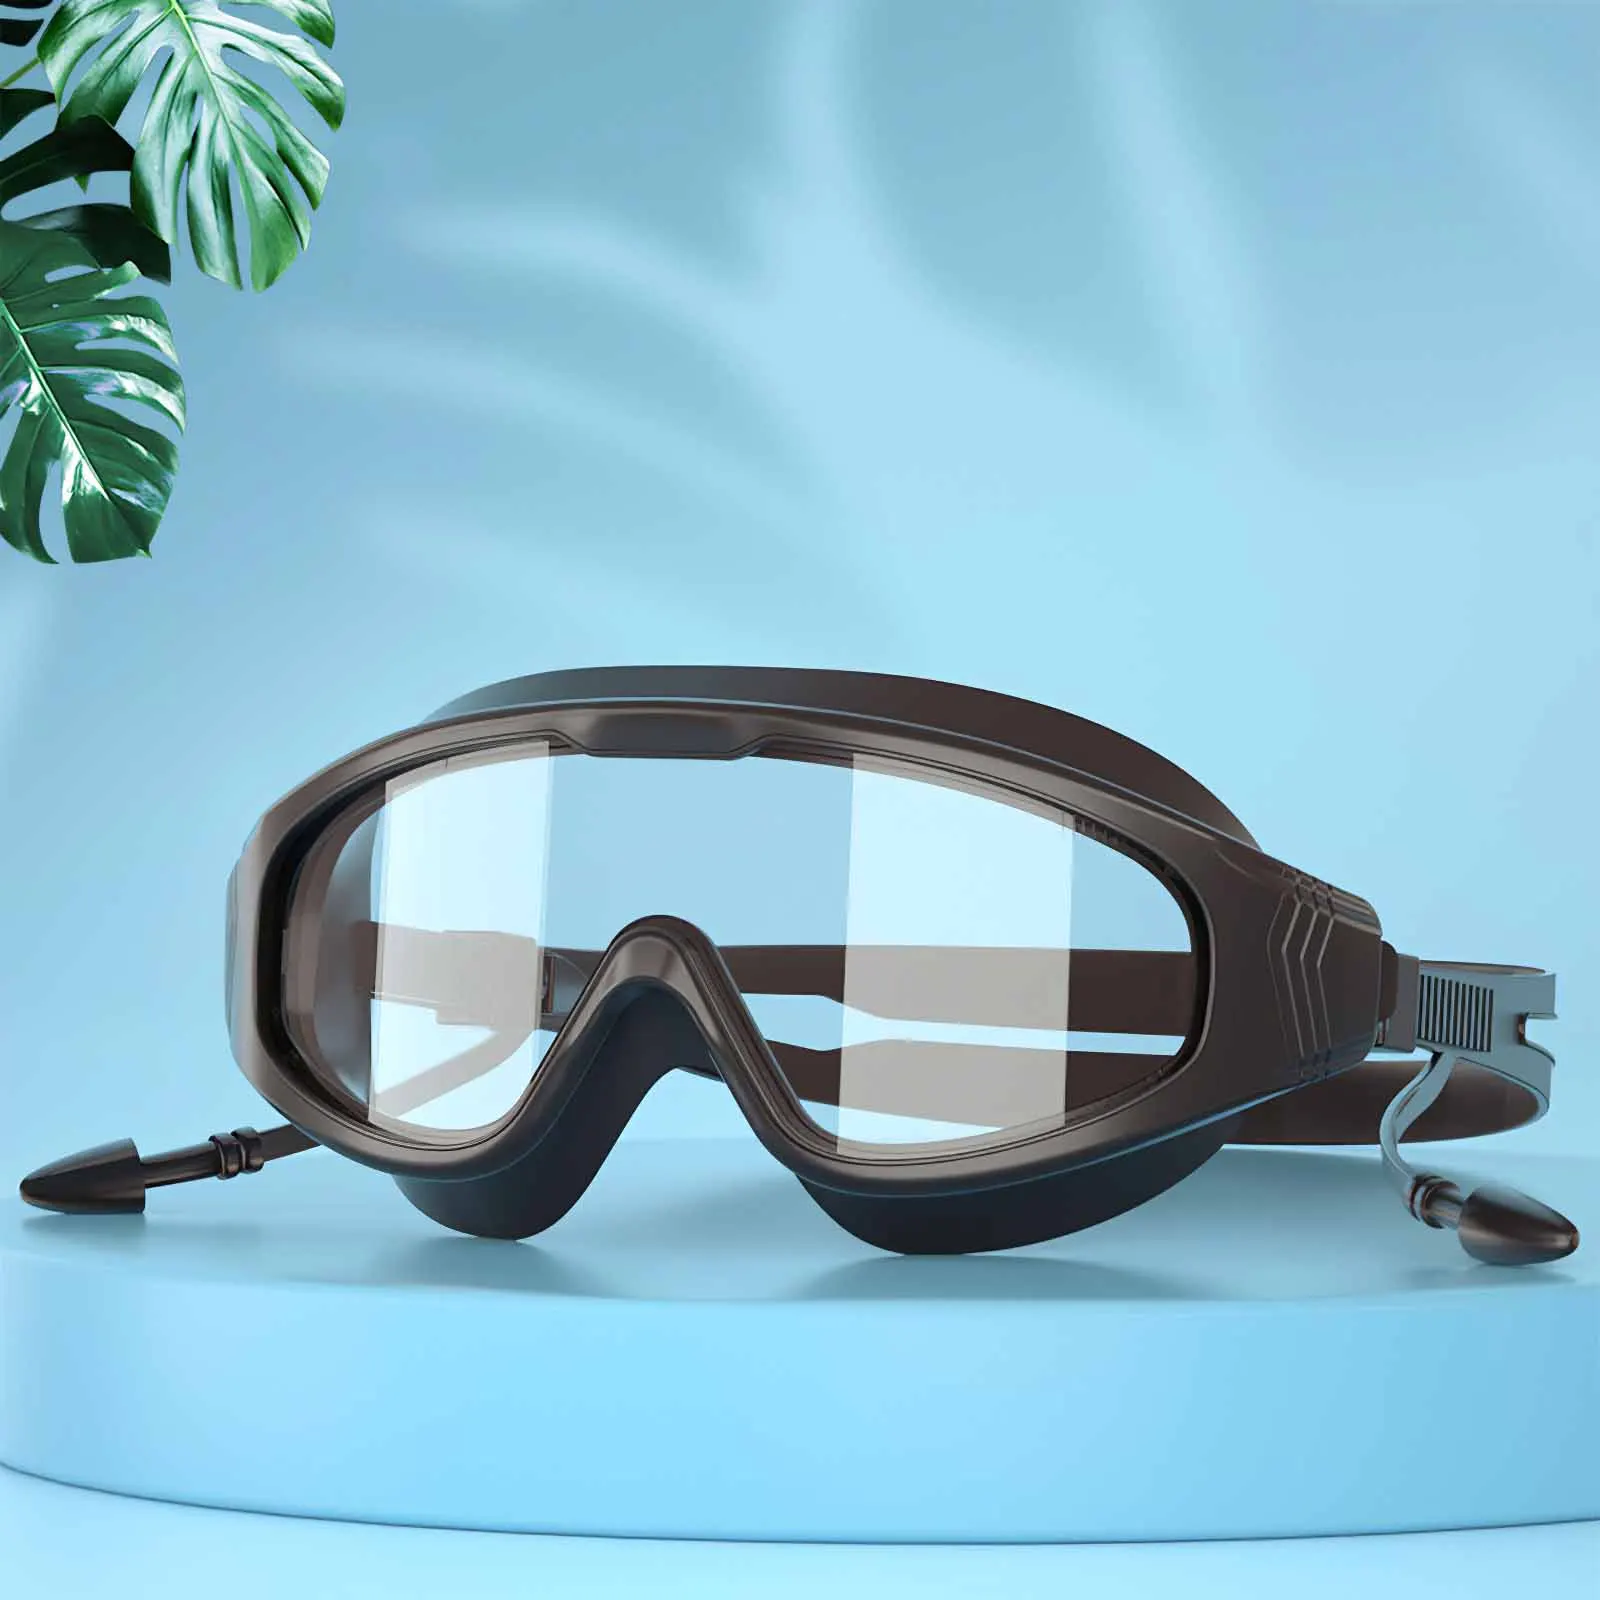 

Профессиональный Взрослый Анти-туман линзы с защитой от ультрафиолетовых лучей для мужчин и женщин, очки для плавания Водонепроницаемый ре...